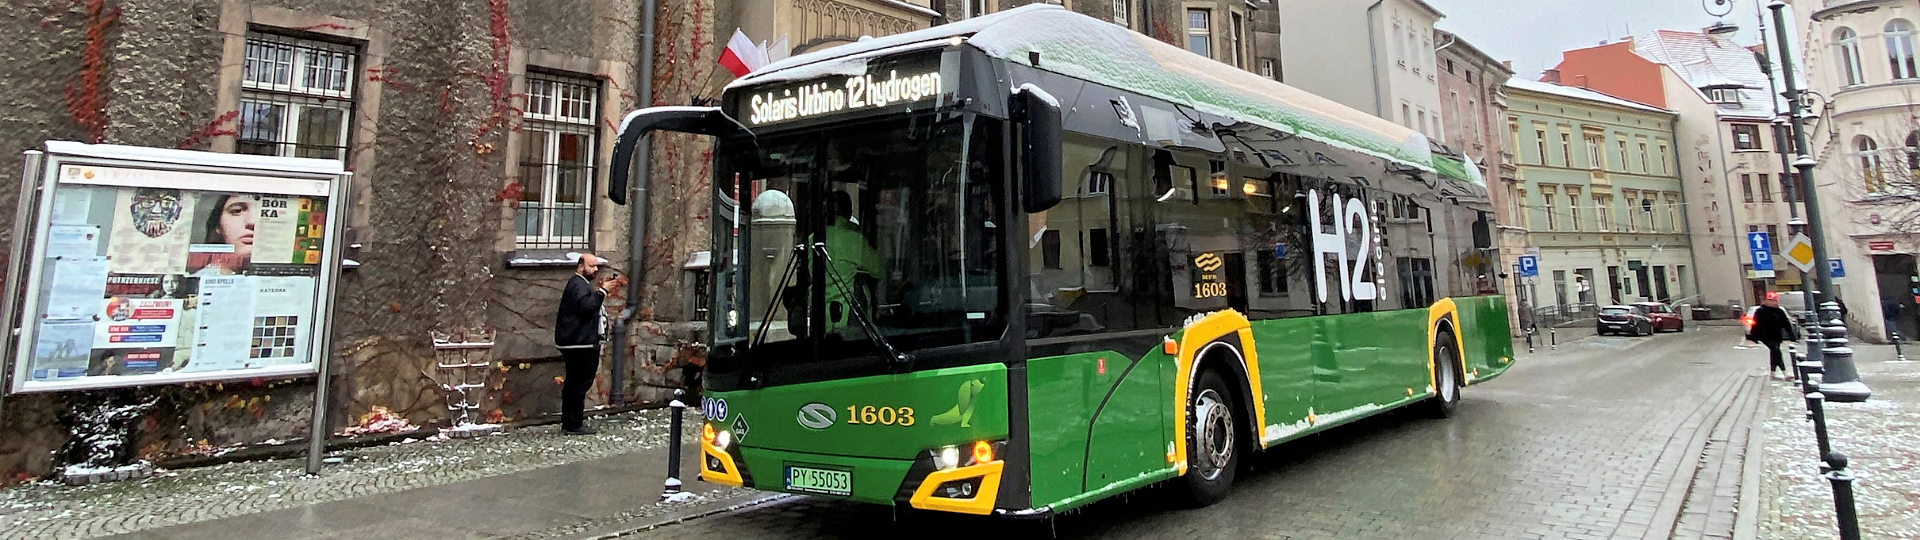 Solaris hydrogen buses in yet another city. Solaris Urbino hydrogen head to Wałbrzych, Poland.